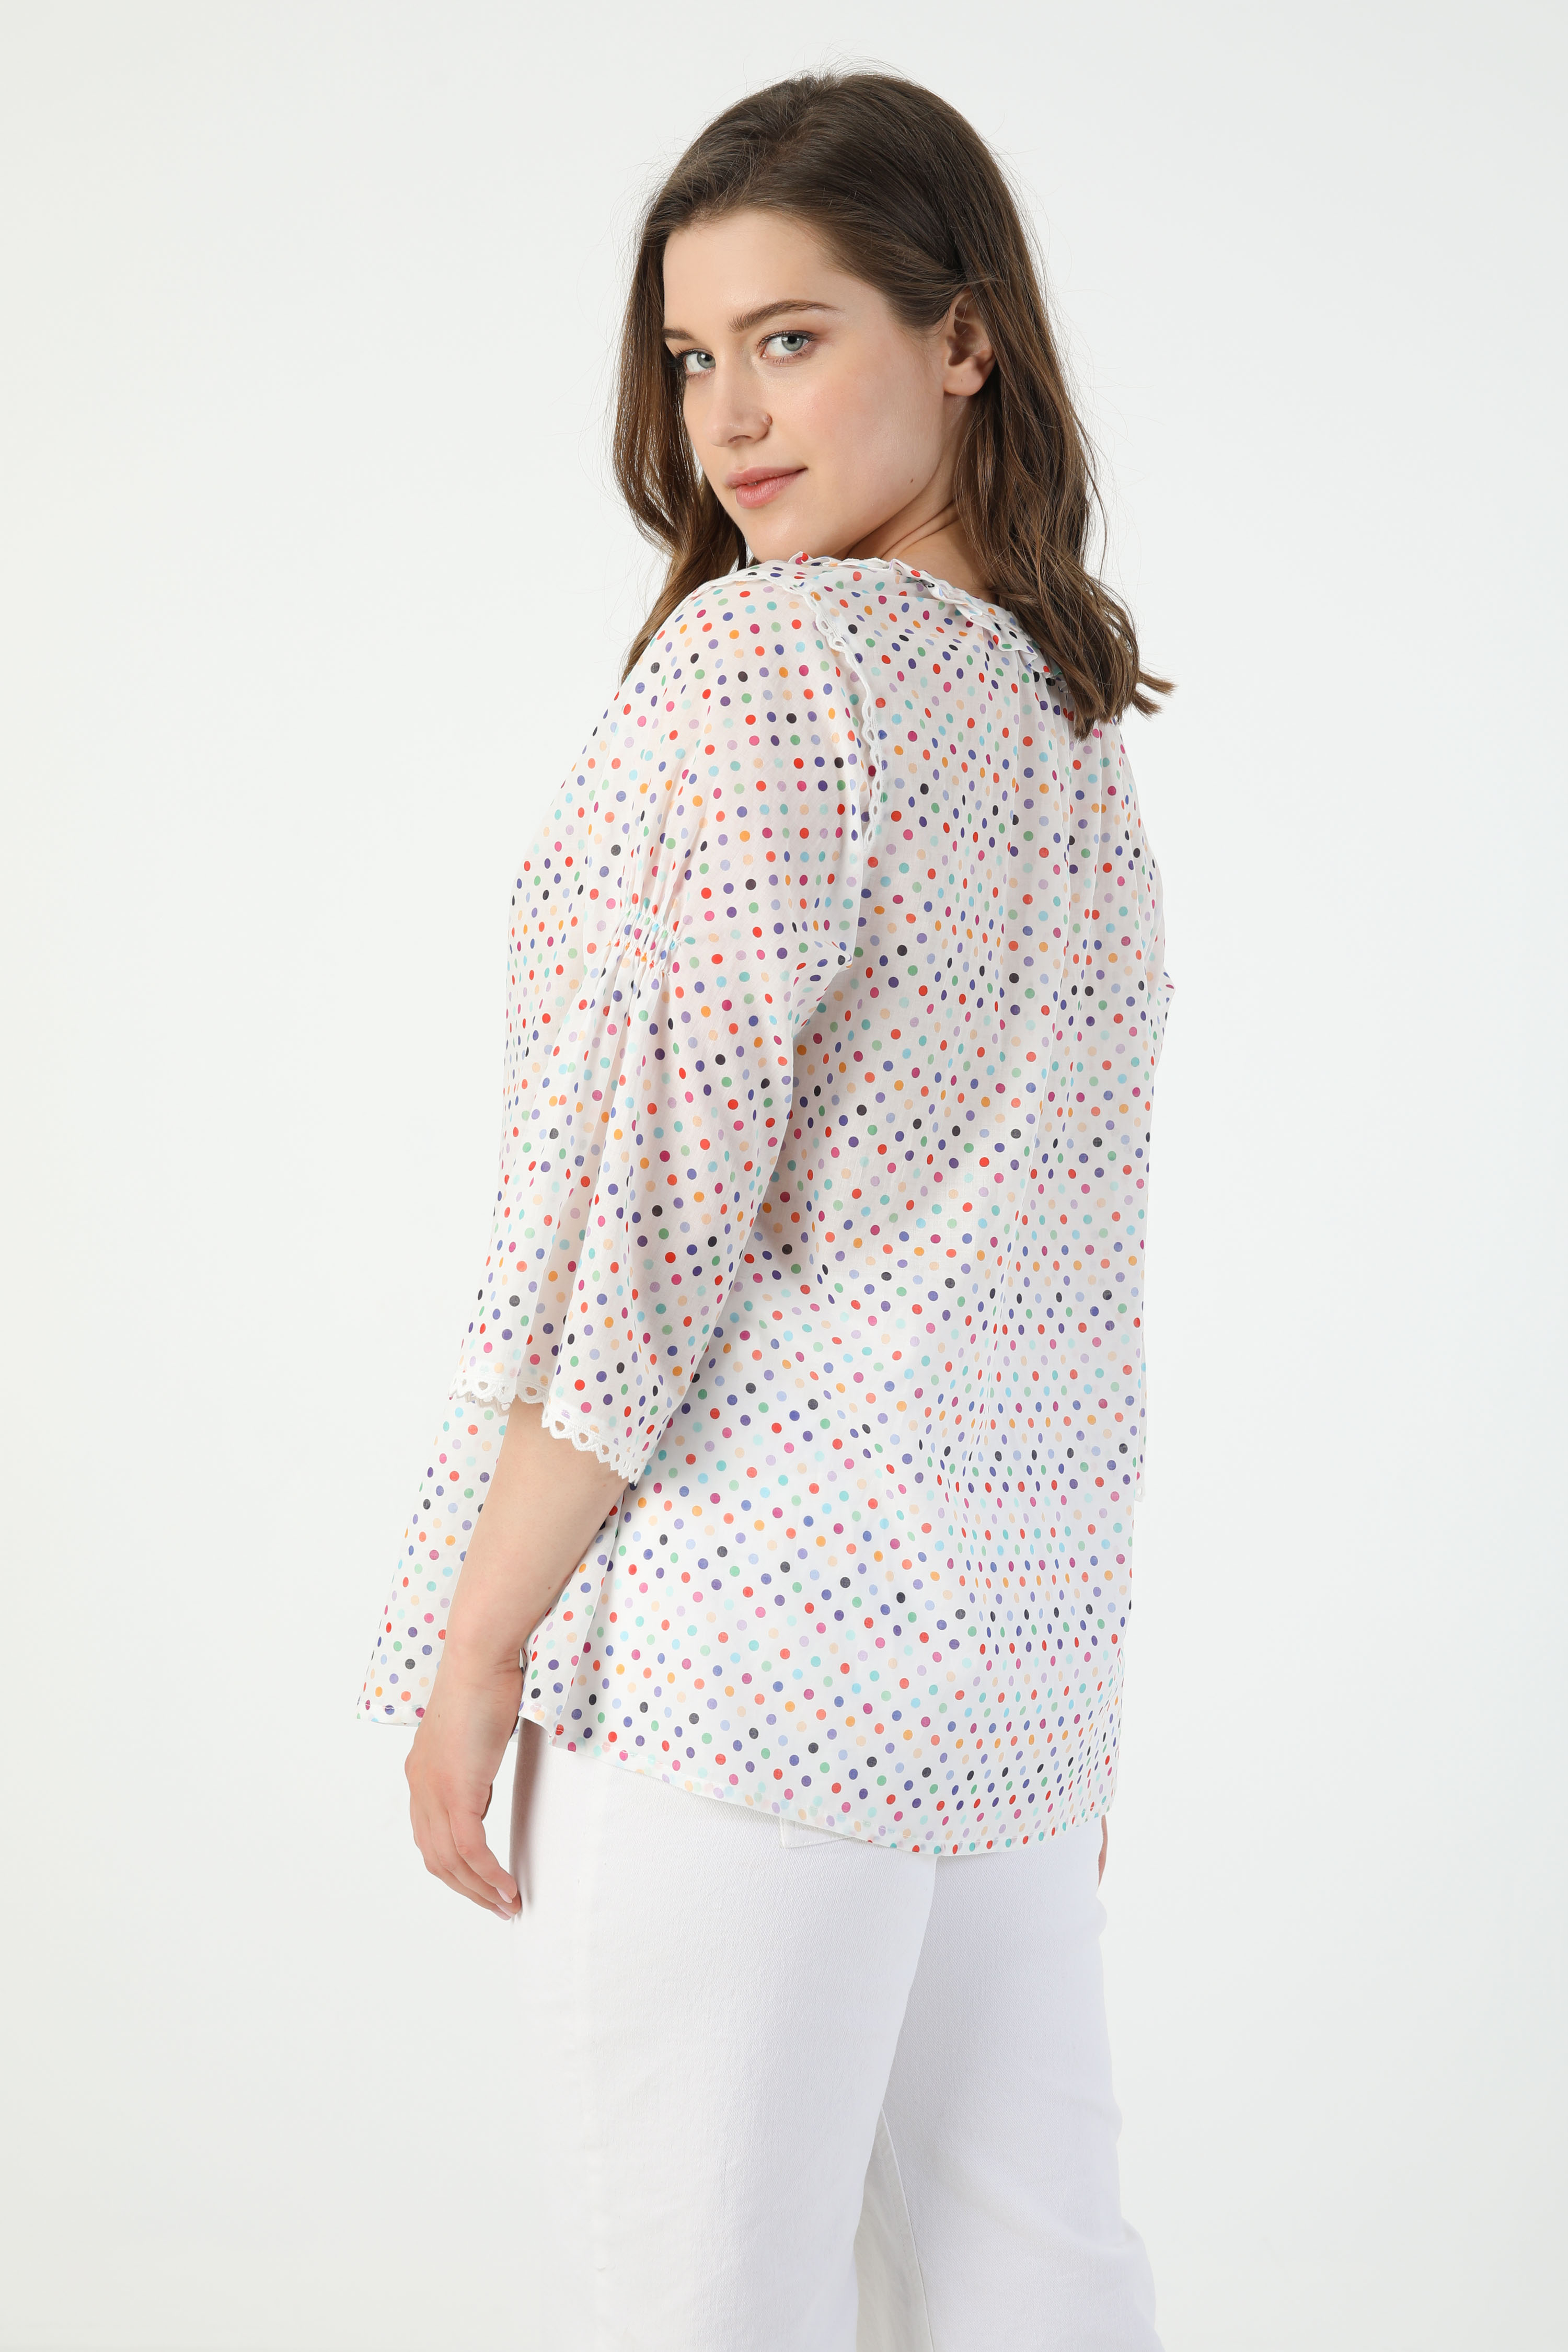 Multicolored polka-dot cotton veil shirt (shipping May 5/10)